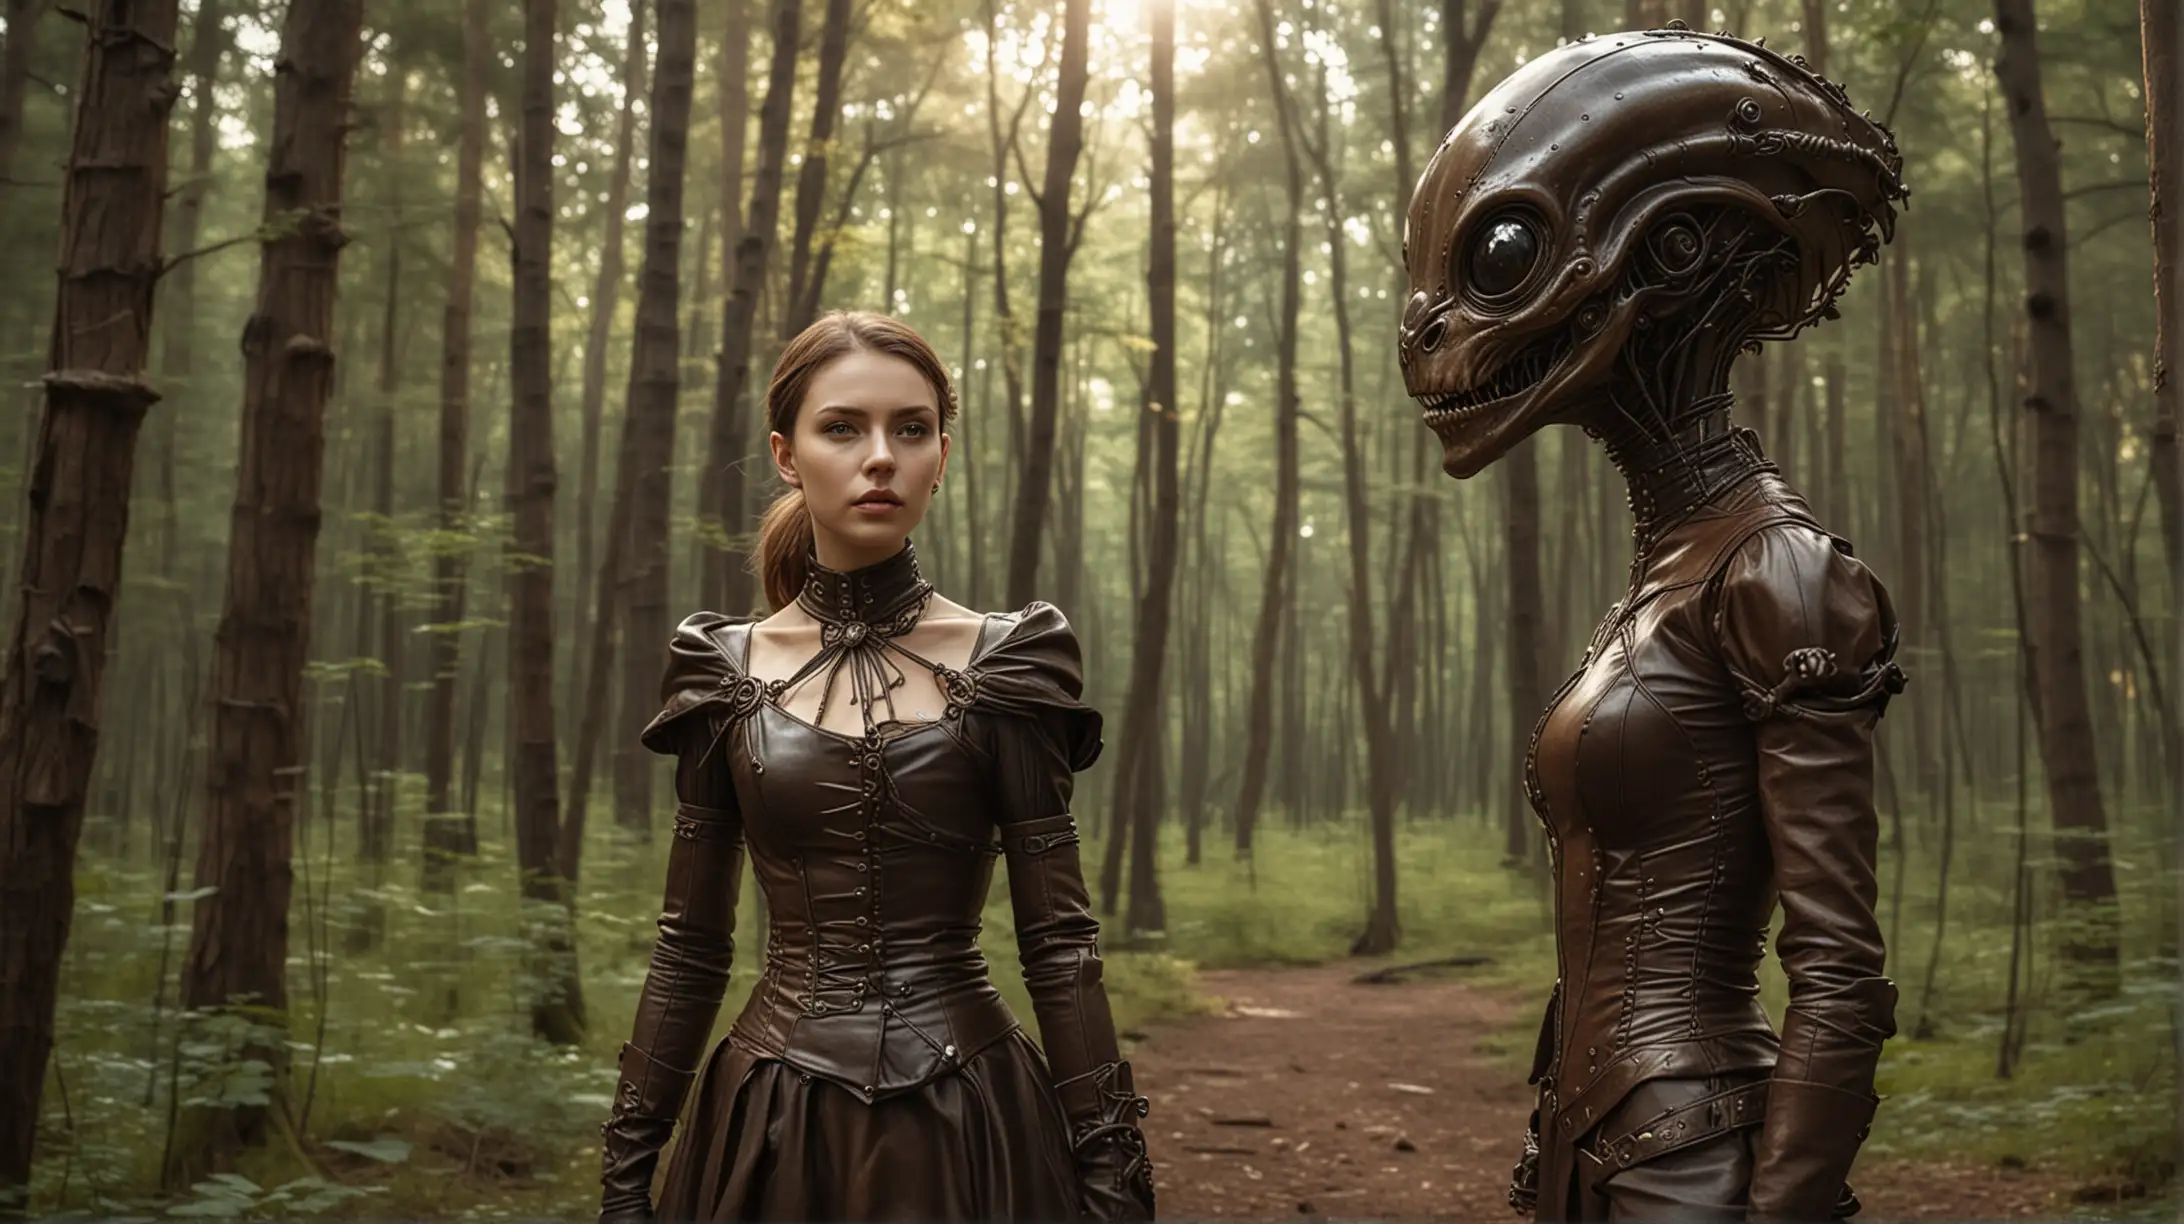 Steampunk Woman Encounters Friendly Alien in Forest